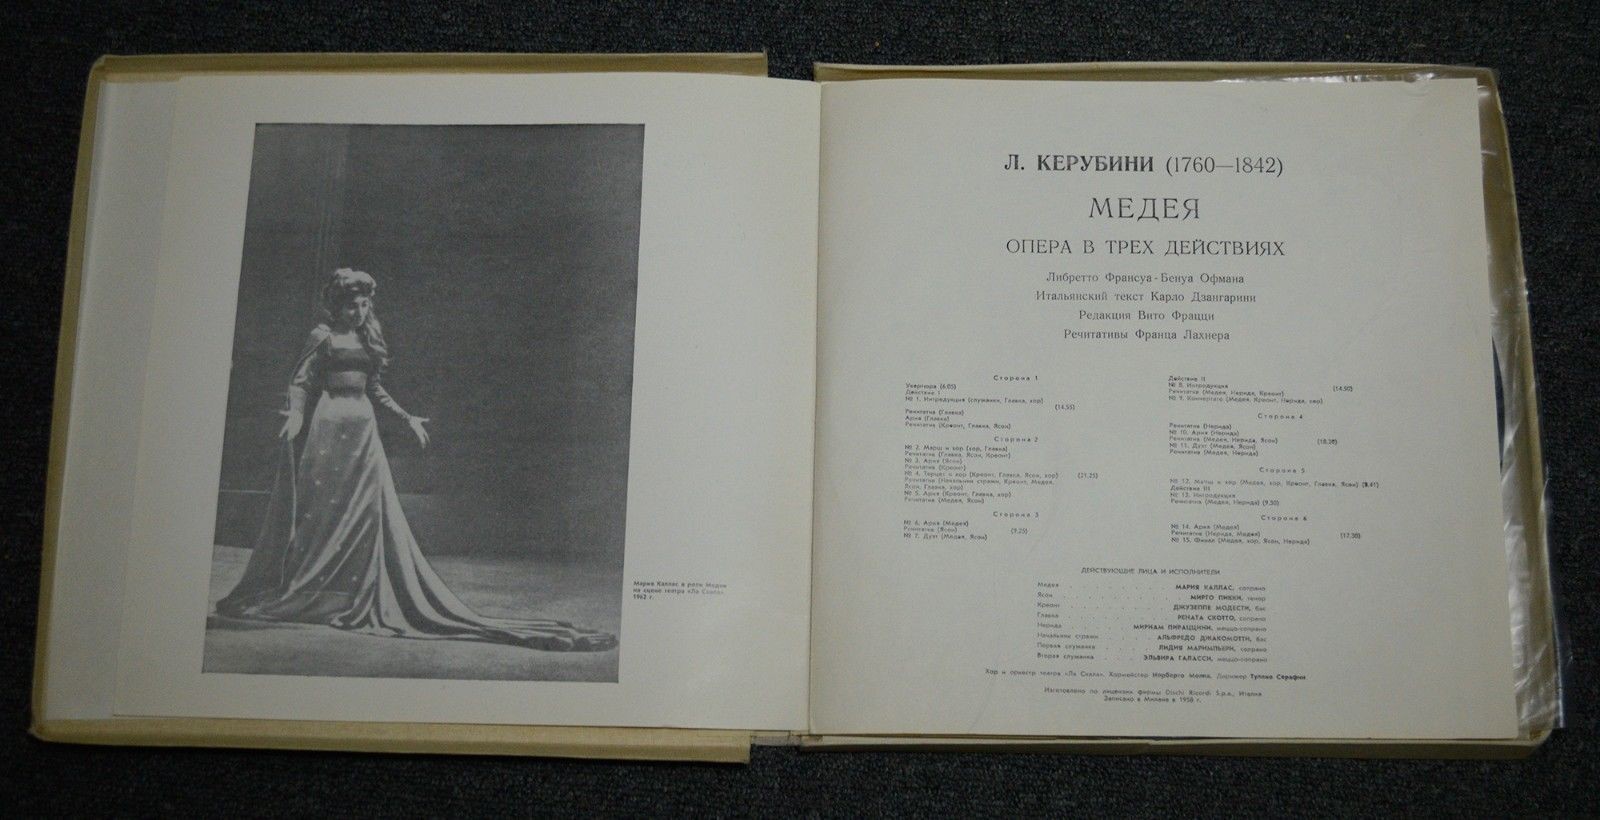 Л. КЕРУБИНИ (1760-1842): «Медея», опера в трех действиях (на итальянском яз.)